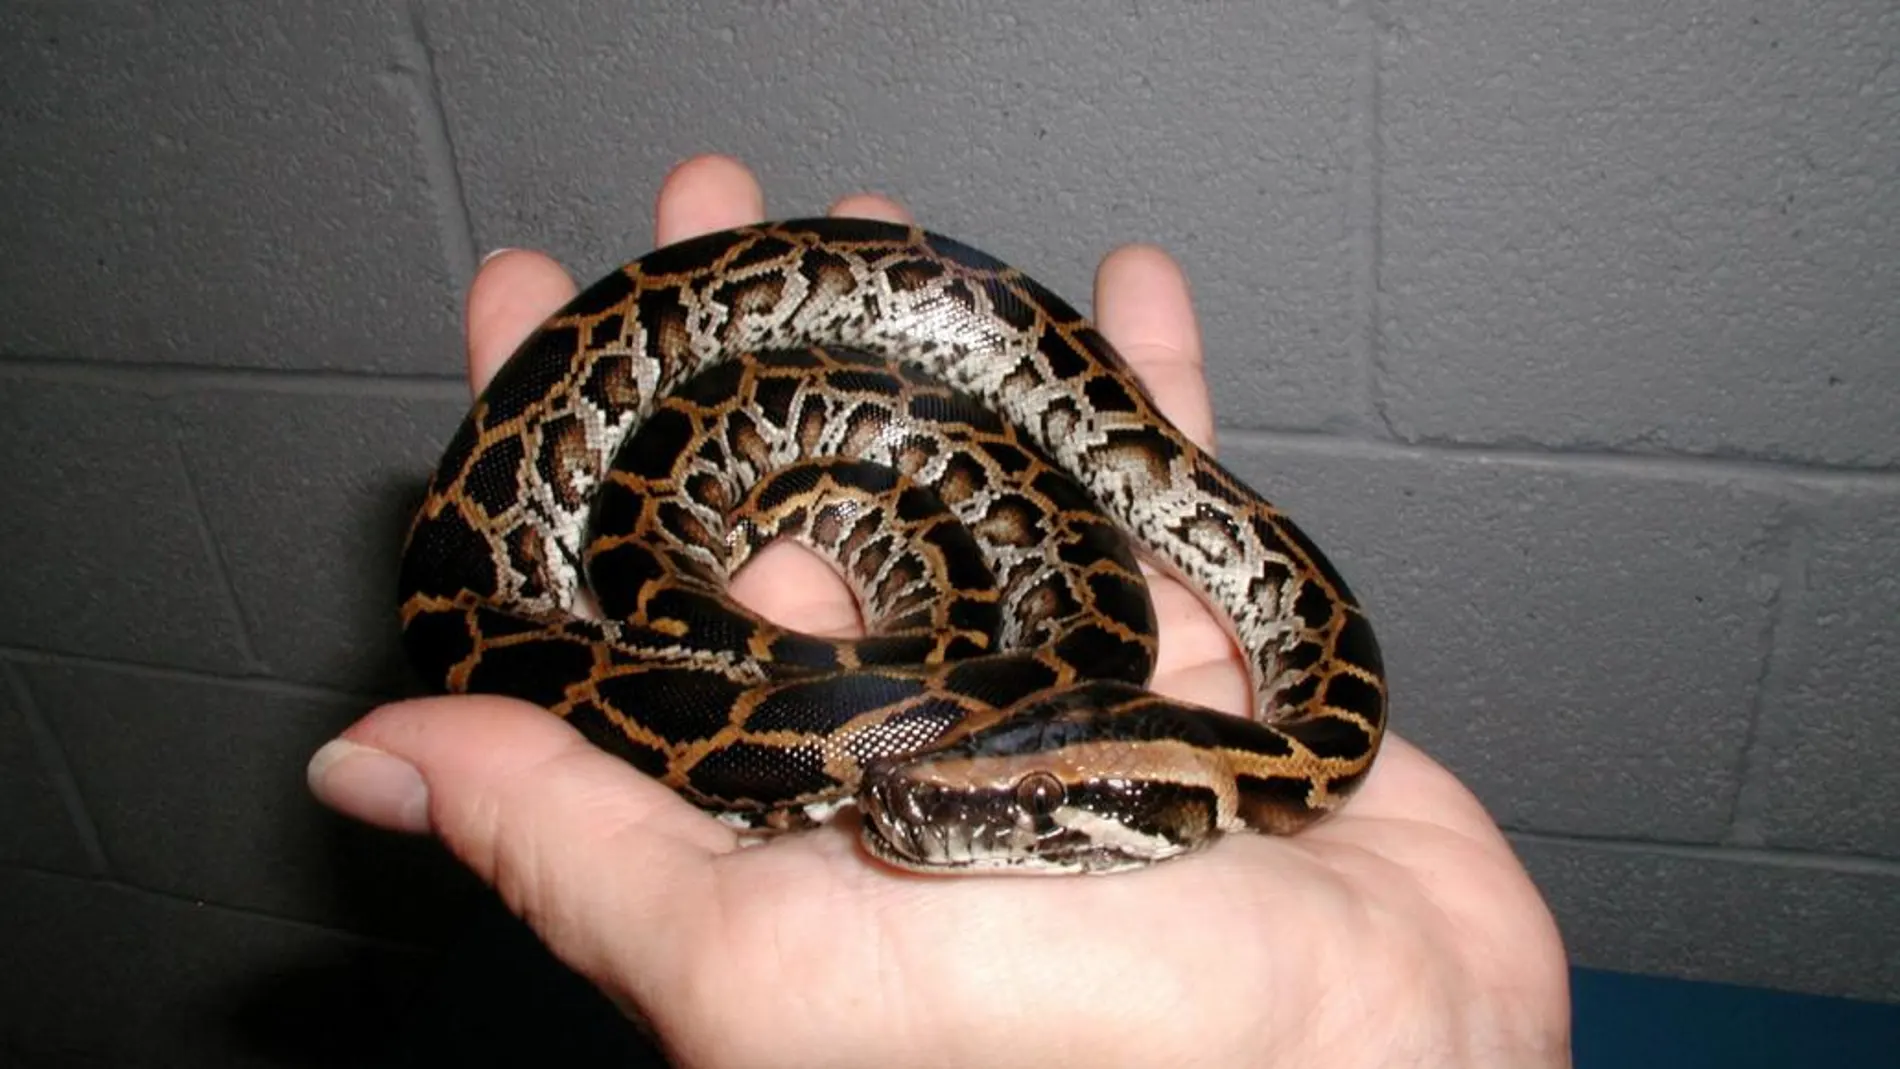 Una serpiente pitón birmana capturada hace unos años en los Everglades, en una imagen de archivo